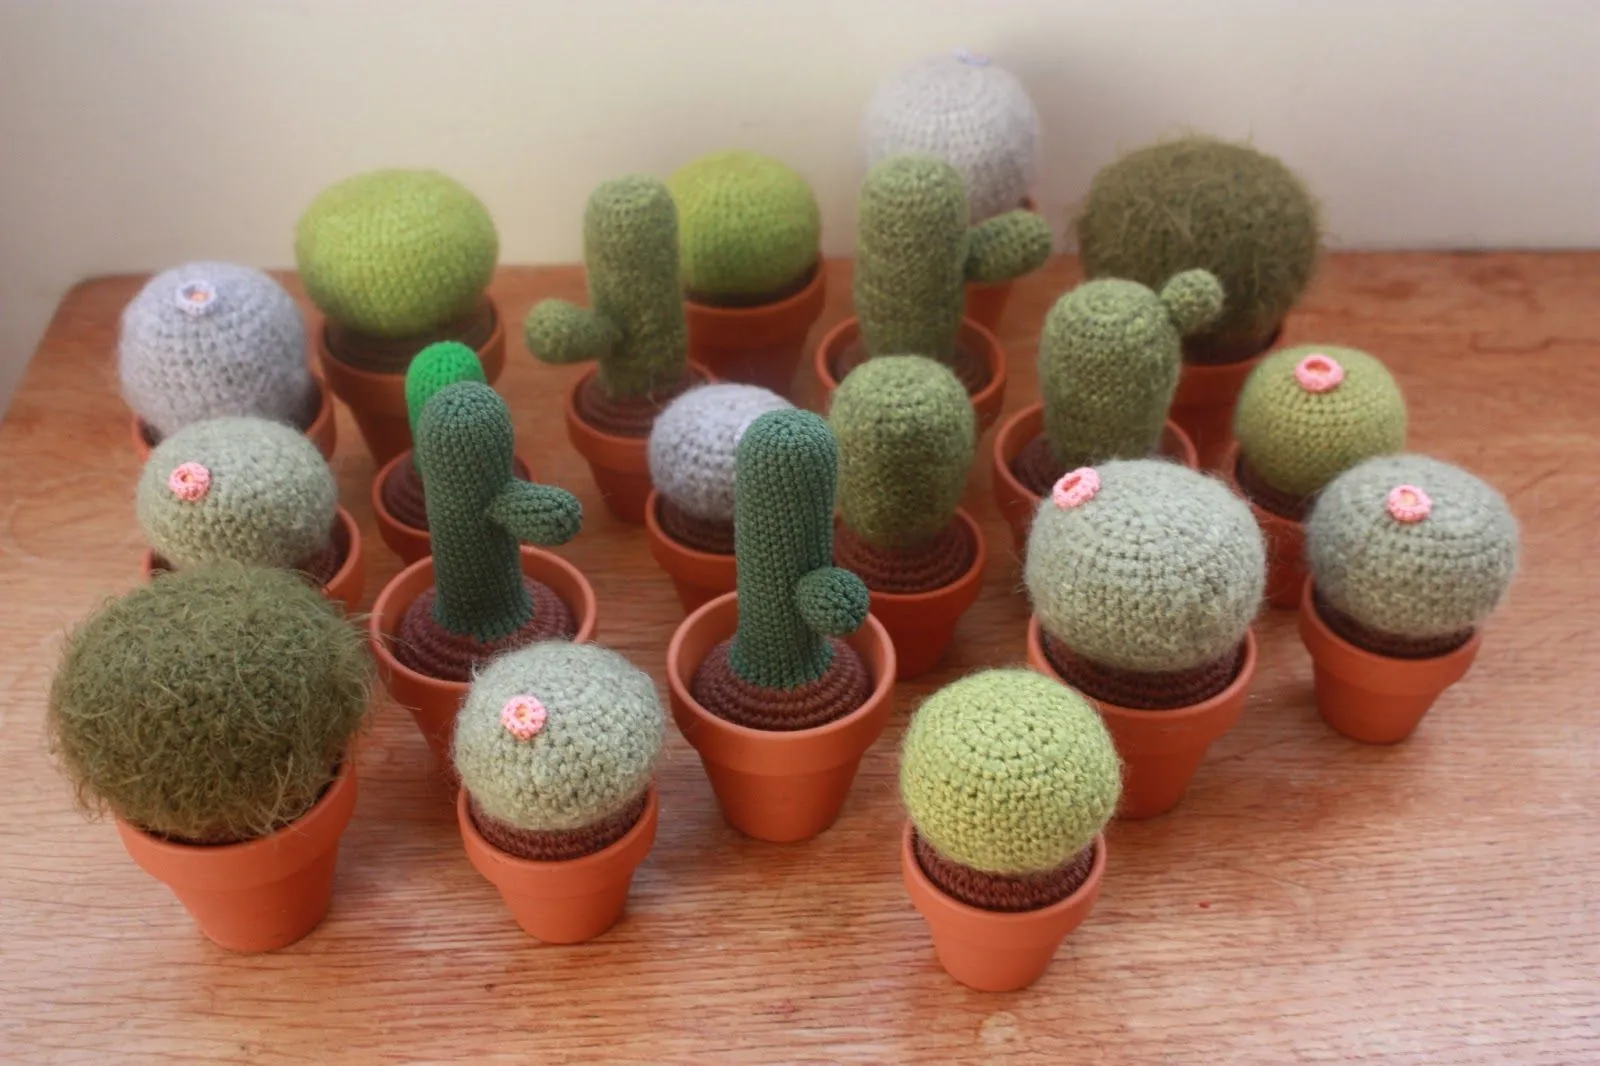 Amigurumi creations by Laura: Cacti, crochet ones :)